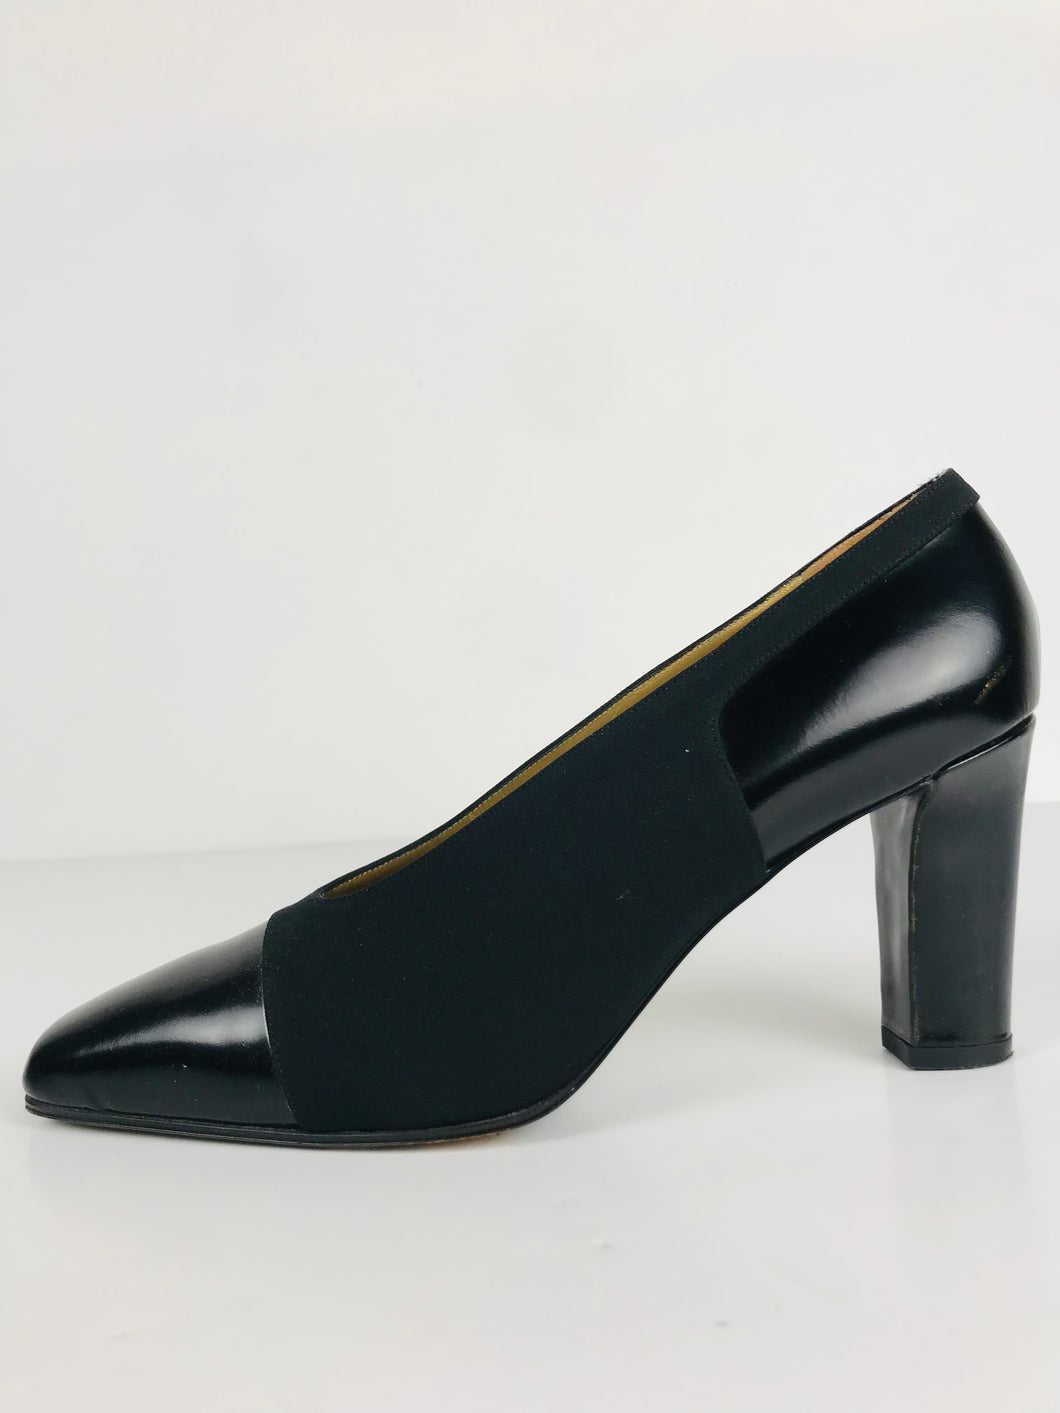 Yves Saint Laurent Women's Smart Heels | EU40 UK7 | Black